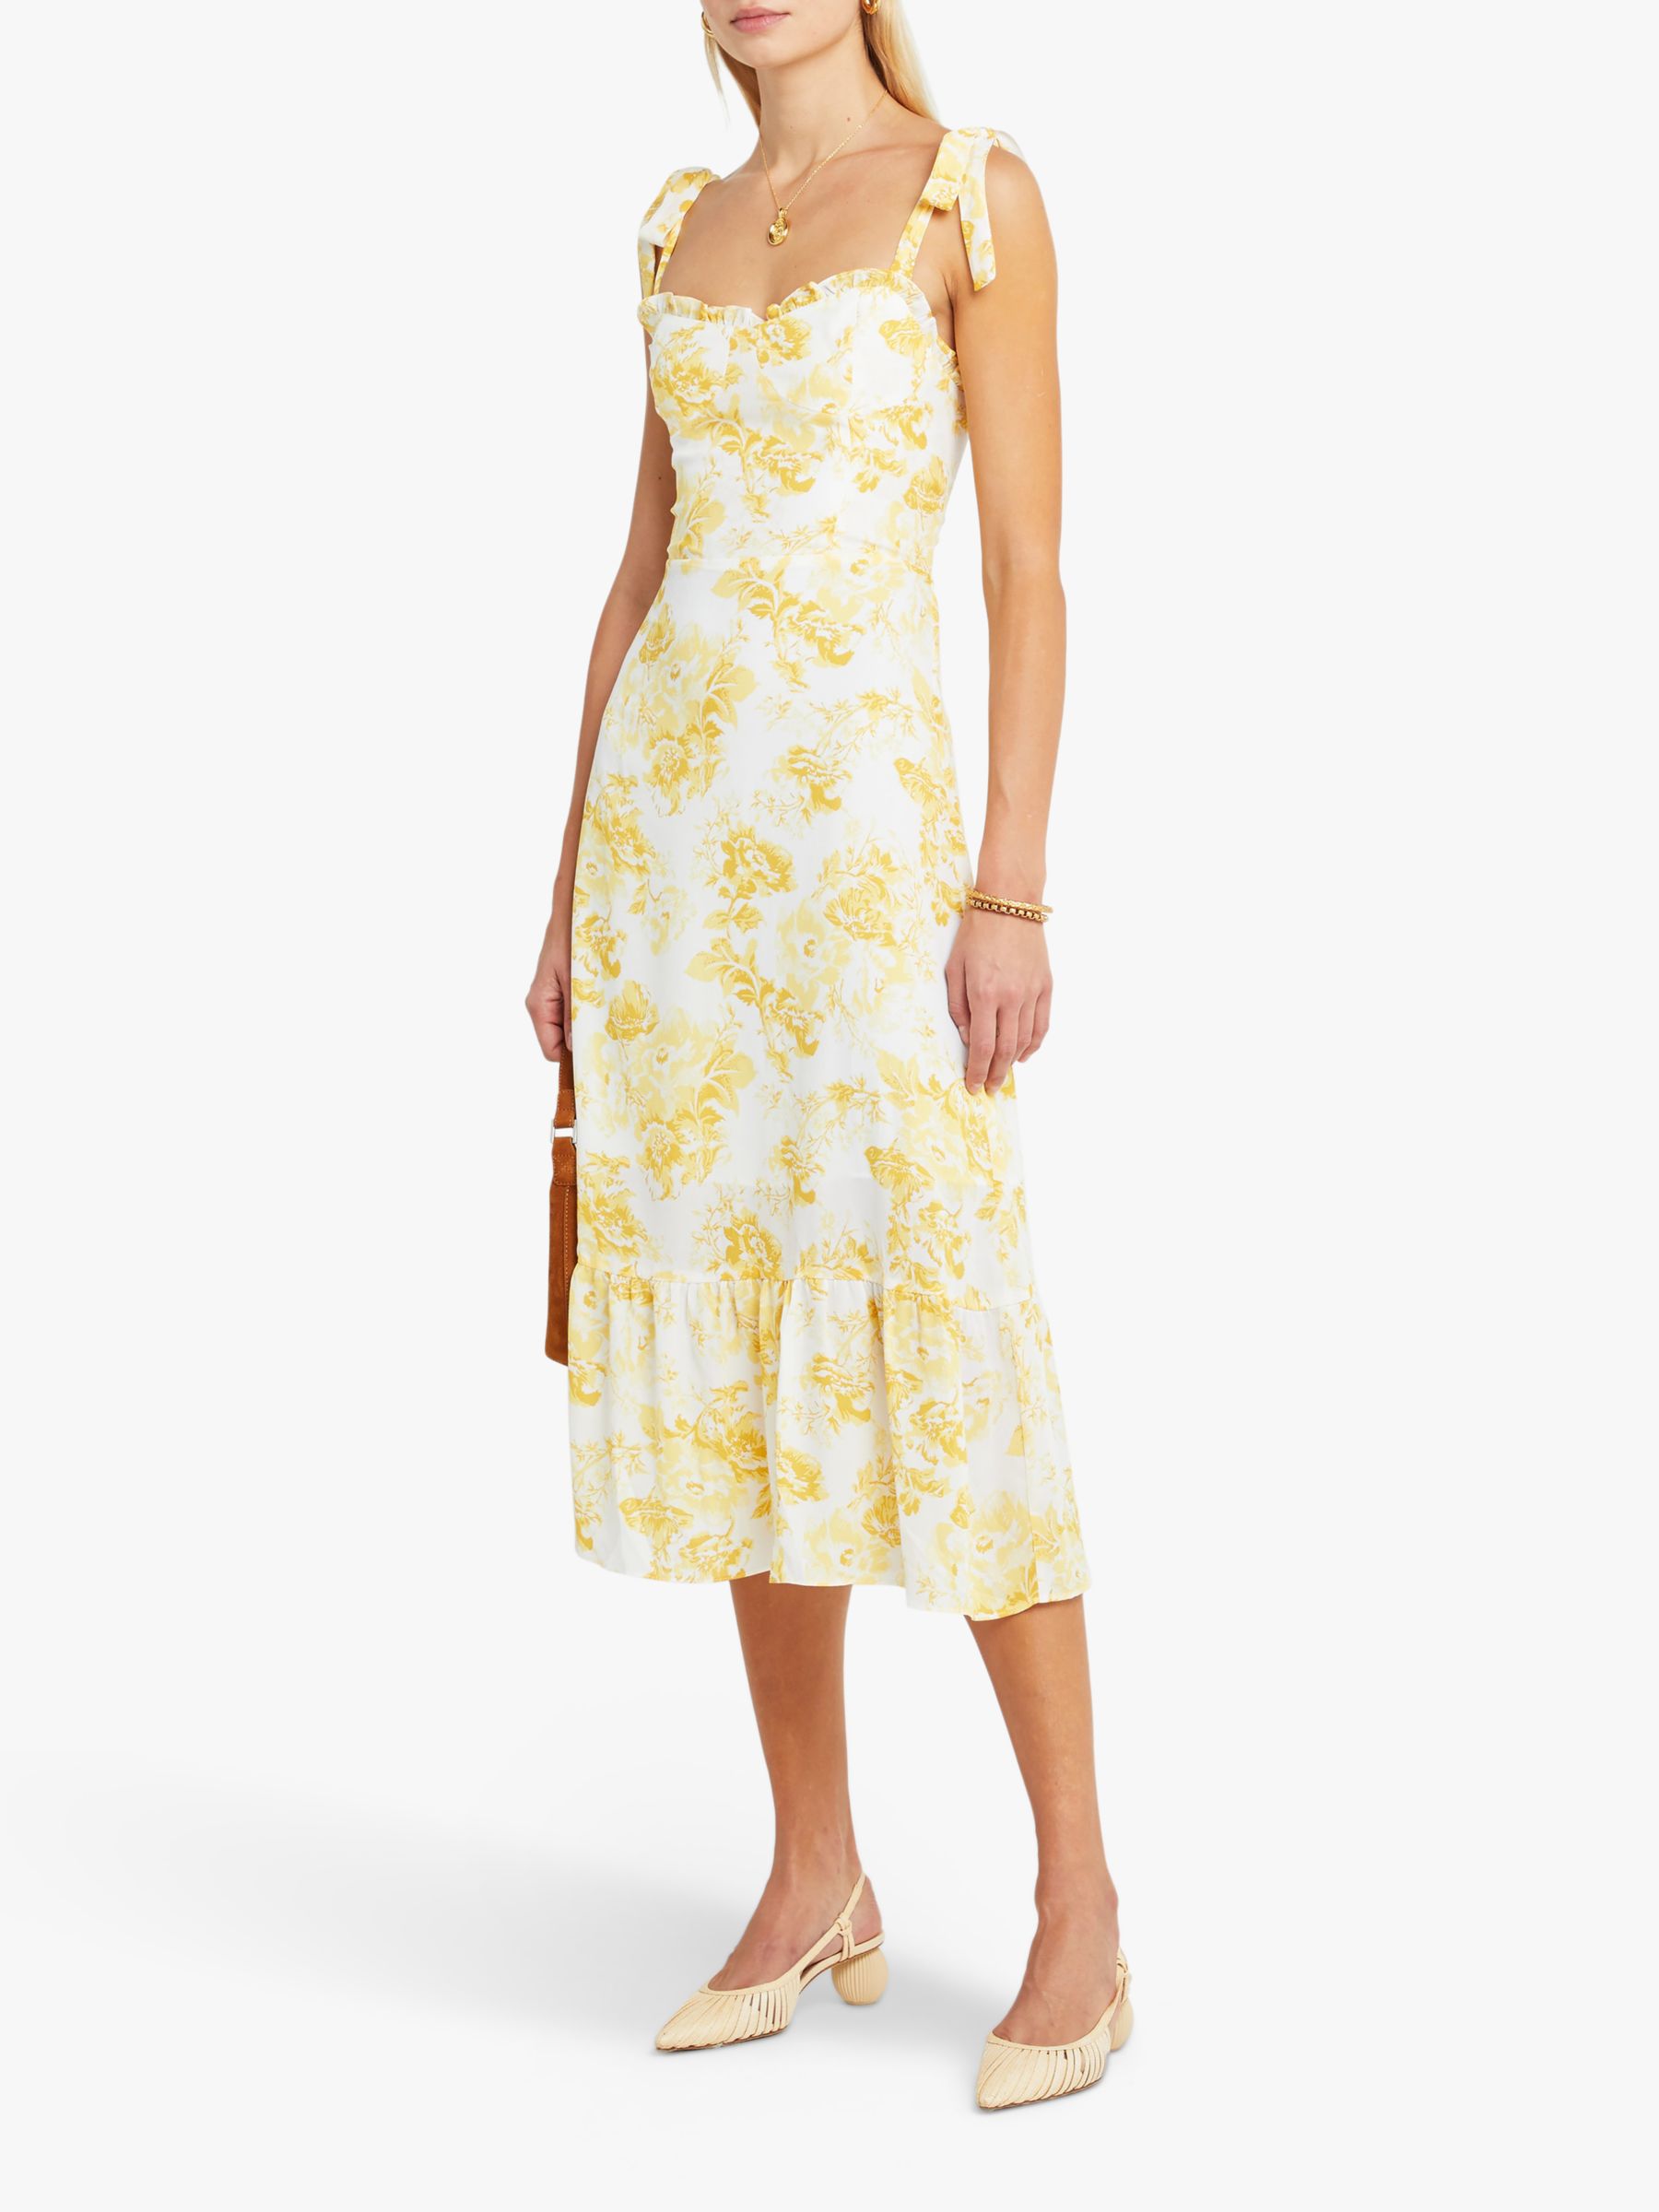 o.p.t Toile de Jouy Floral Print Sleeveless Midi Dress, Yellow, 8